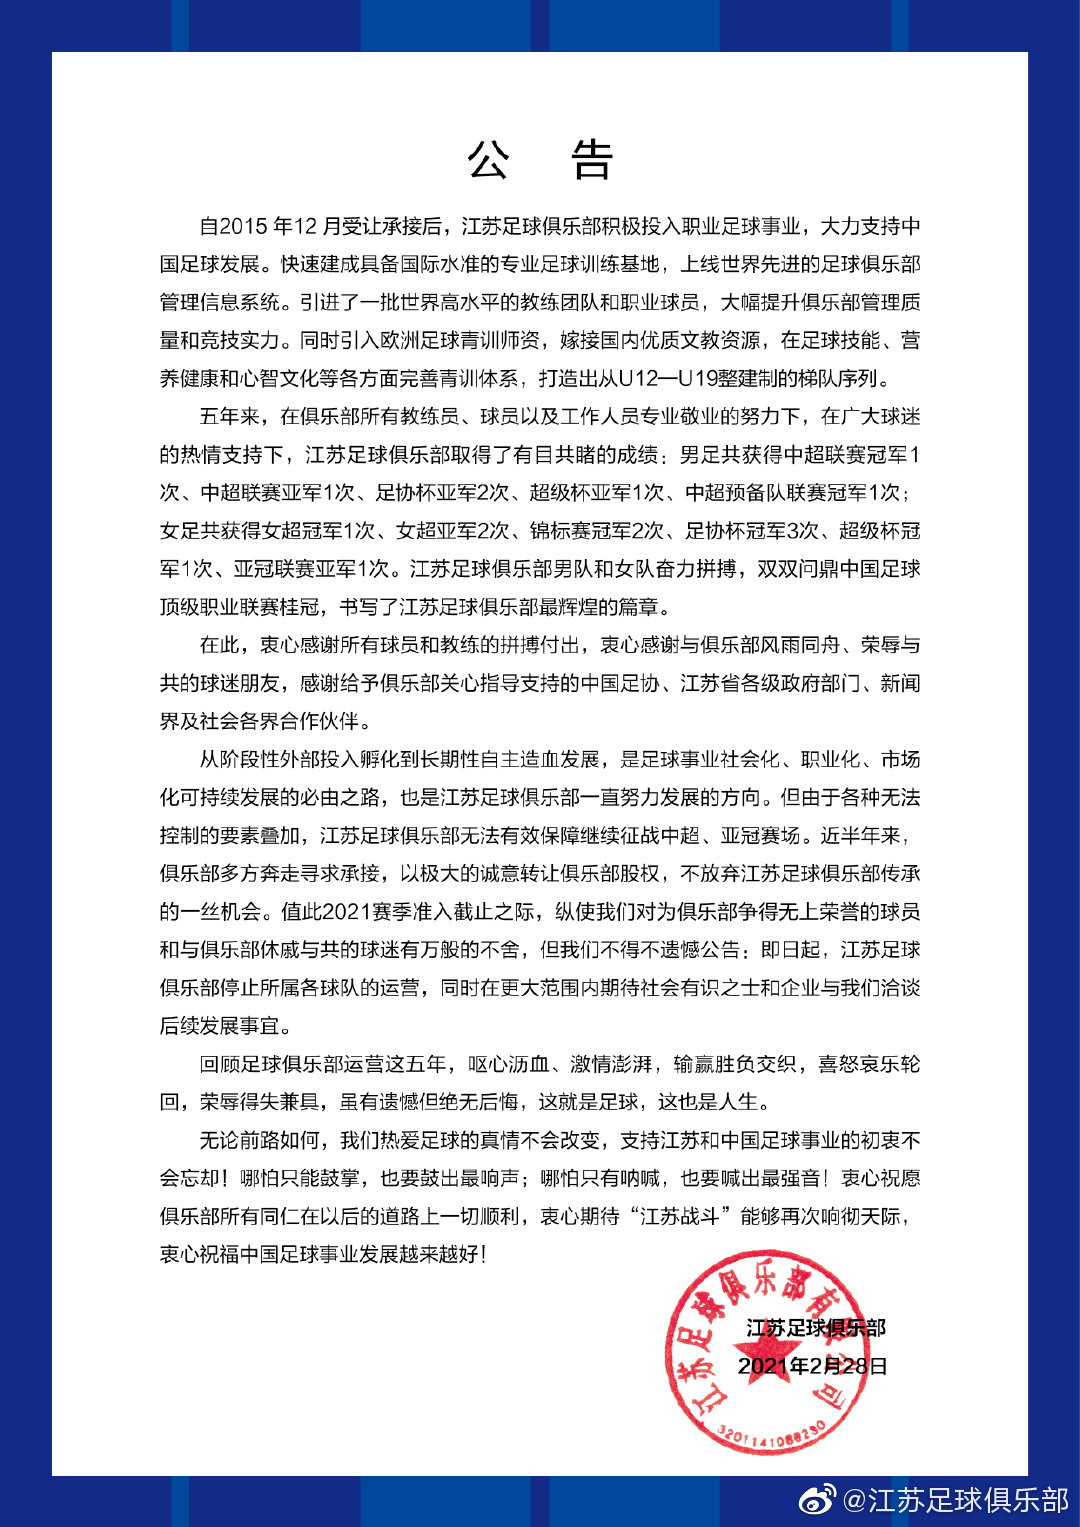 2月28日，江苏队官微发布《关于江苏足球俱乐部所属各球队停止运营的公告》。